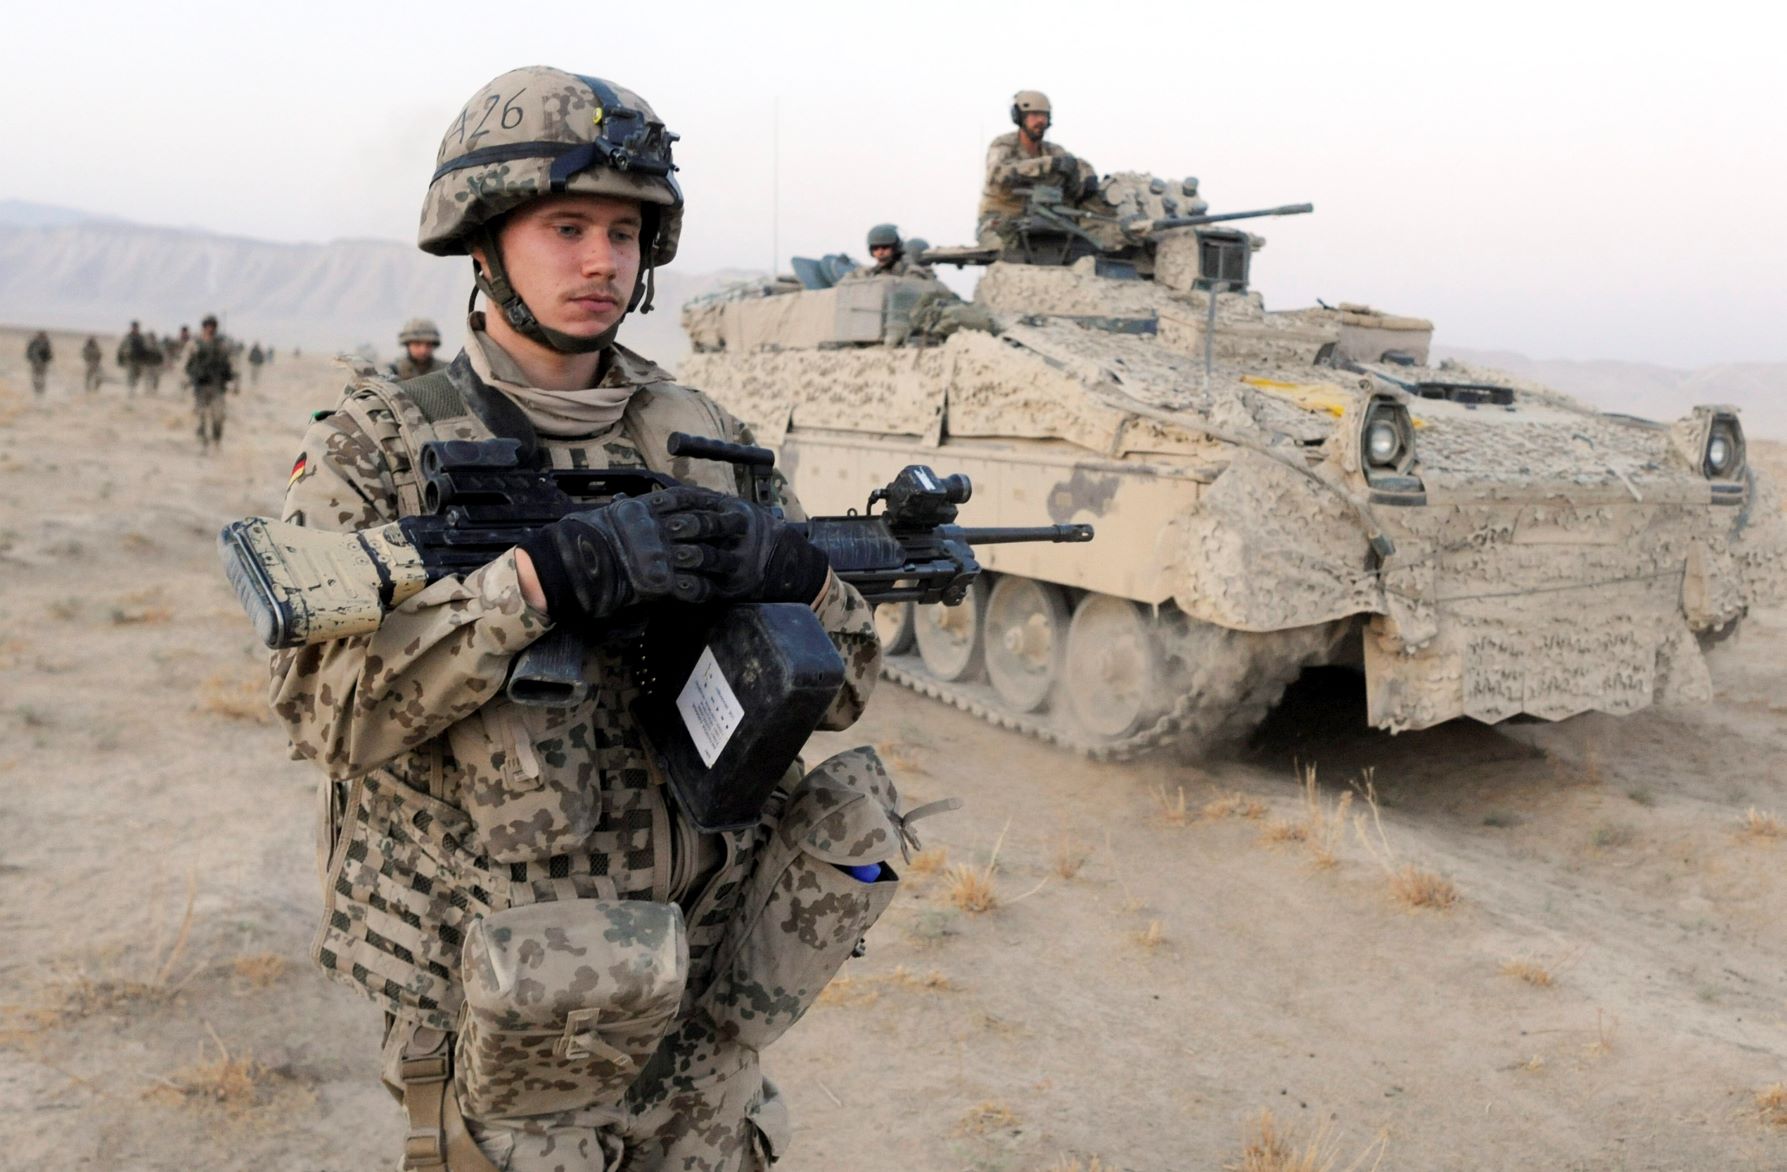 20210820-image-mb-dpa-Deutsche Soldaten in Afghanistan 